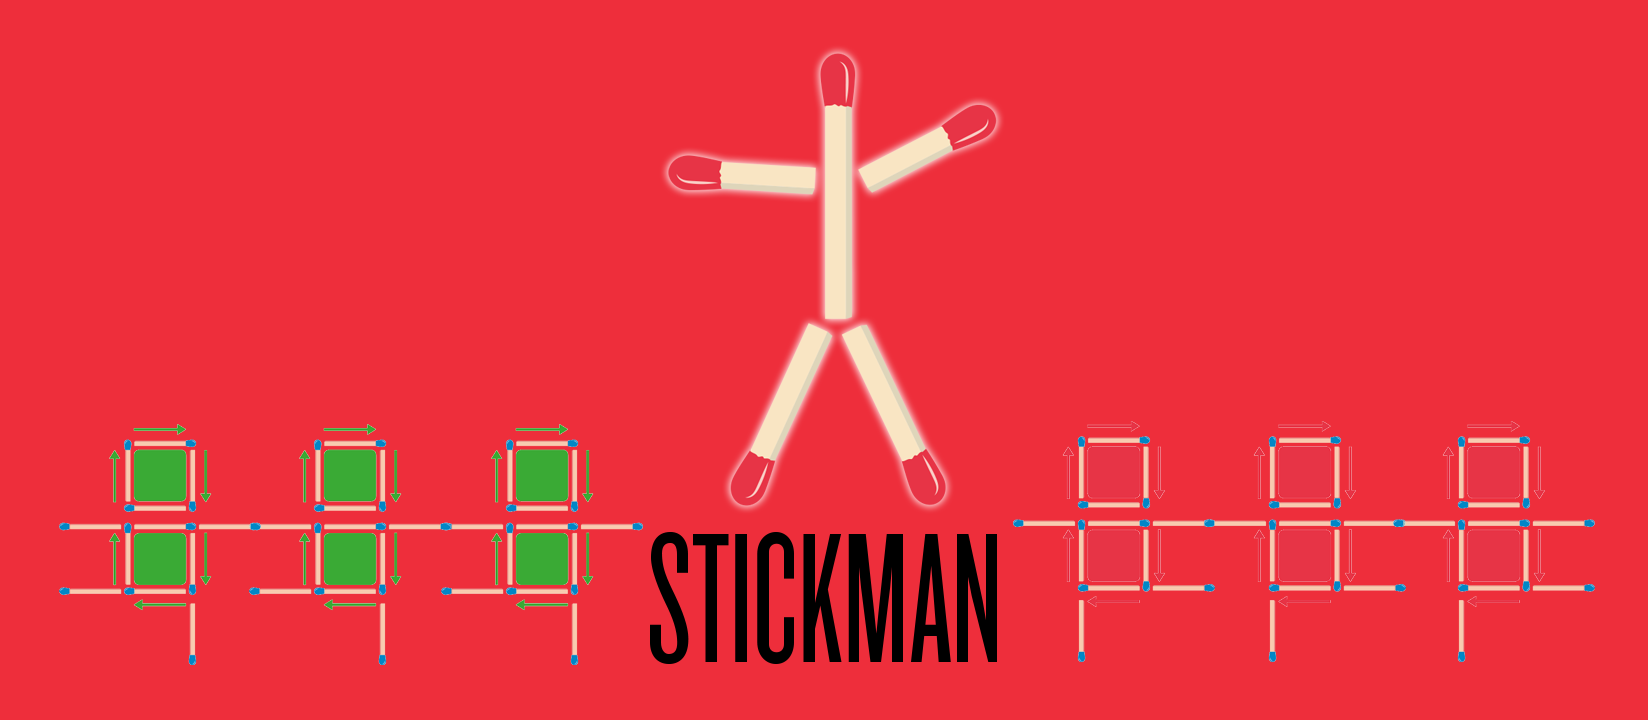 Stickman : paraffine et omoplates